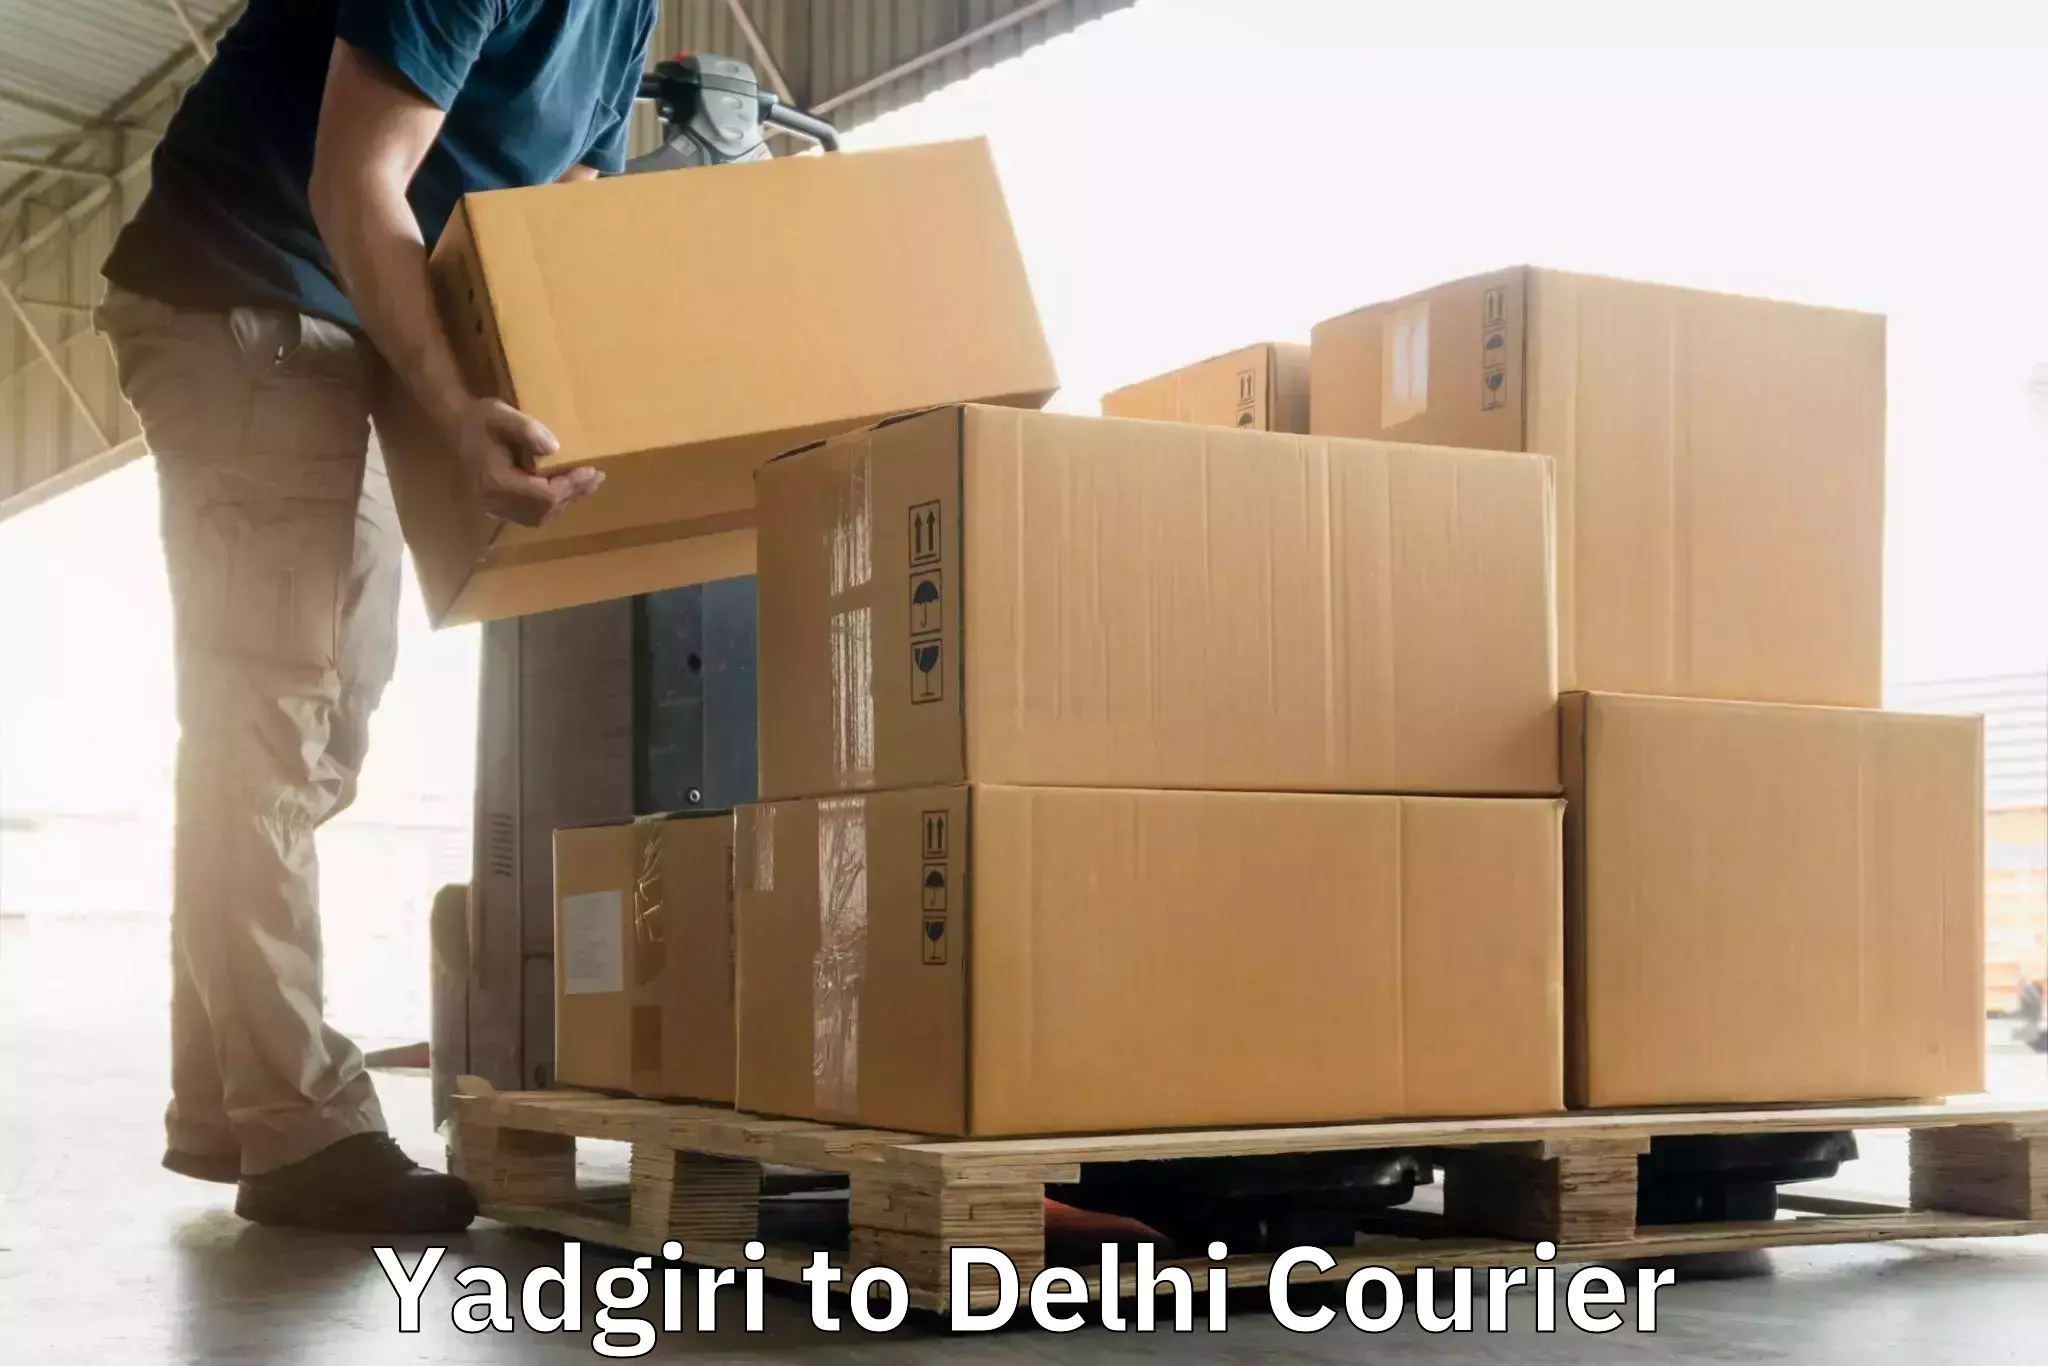 Delivery service partnership Yadgiri to Delhi